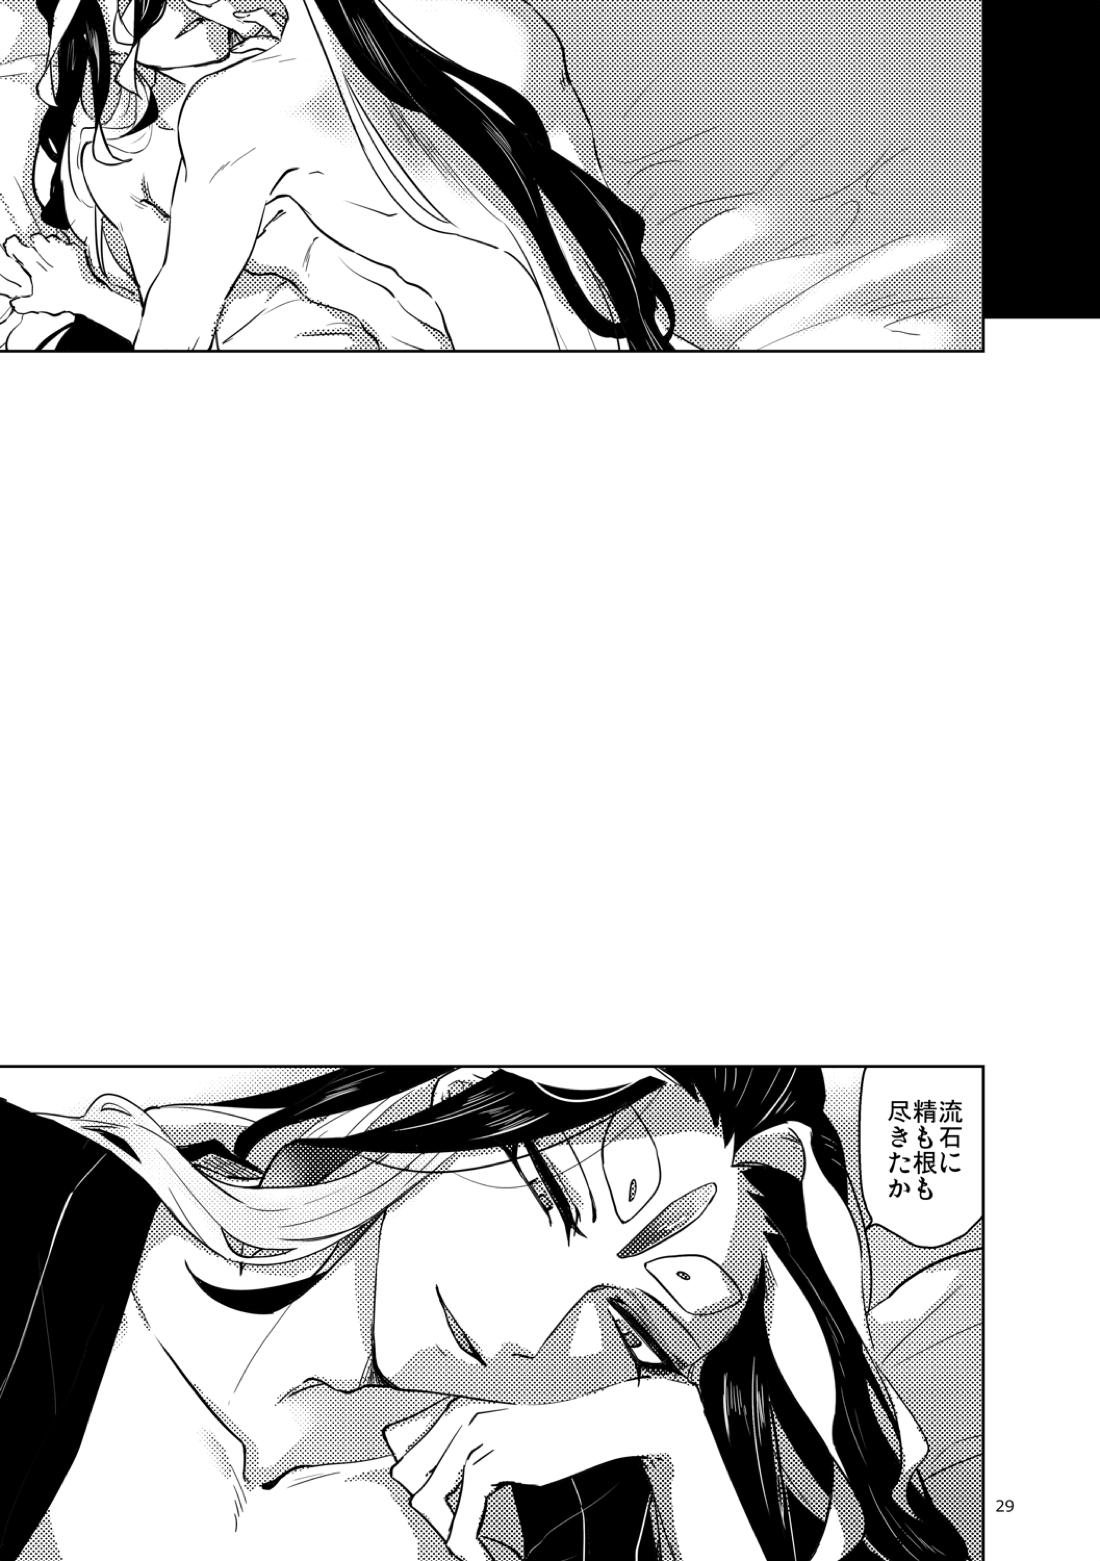 【BL漫画 Fate/Grand Order】男性体と無性体の始皇帝が同期するために媚薬を口にしながら肌を重ねるイチャイチャボーイズラブエッチ30